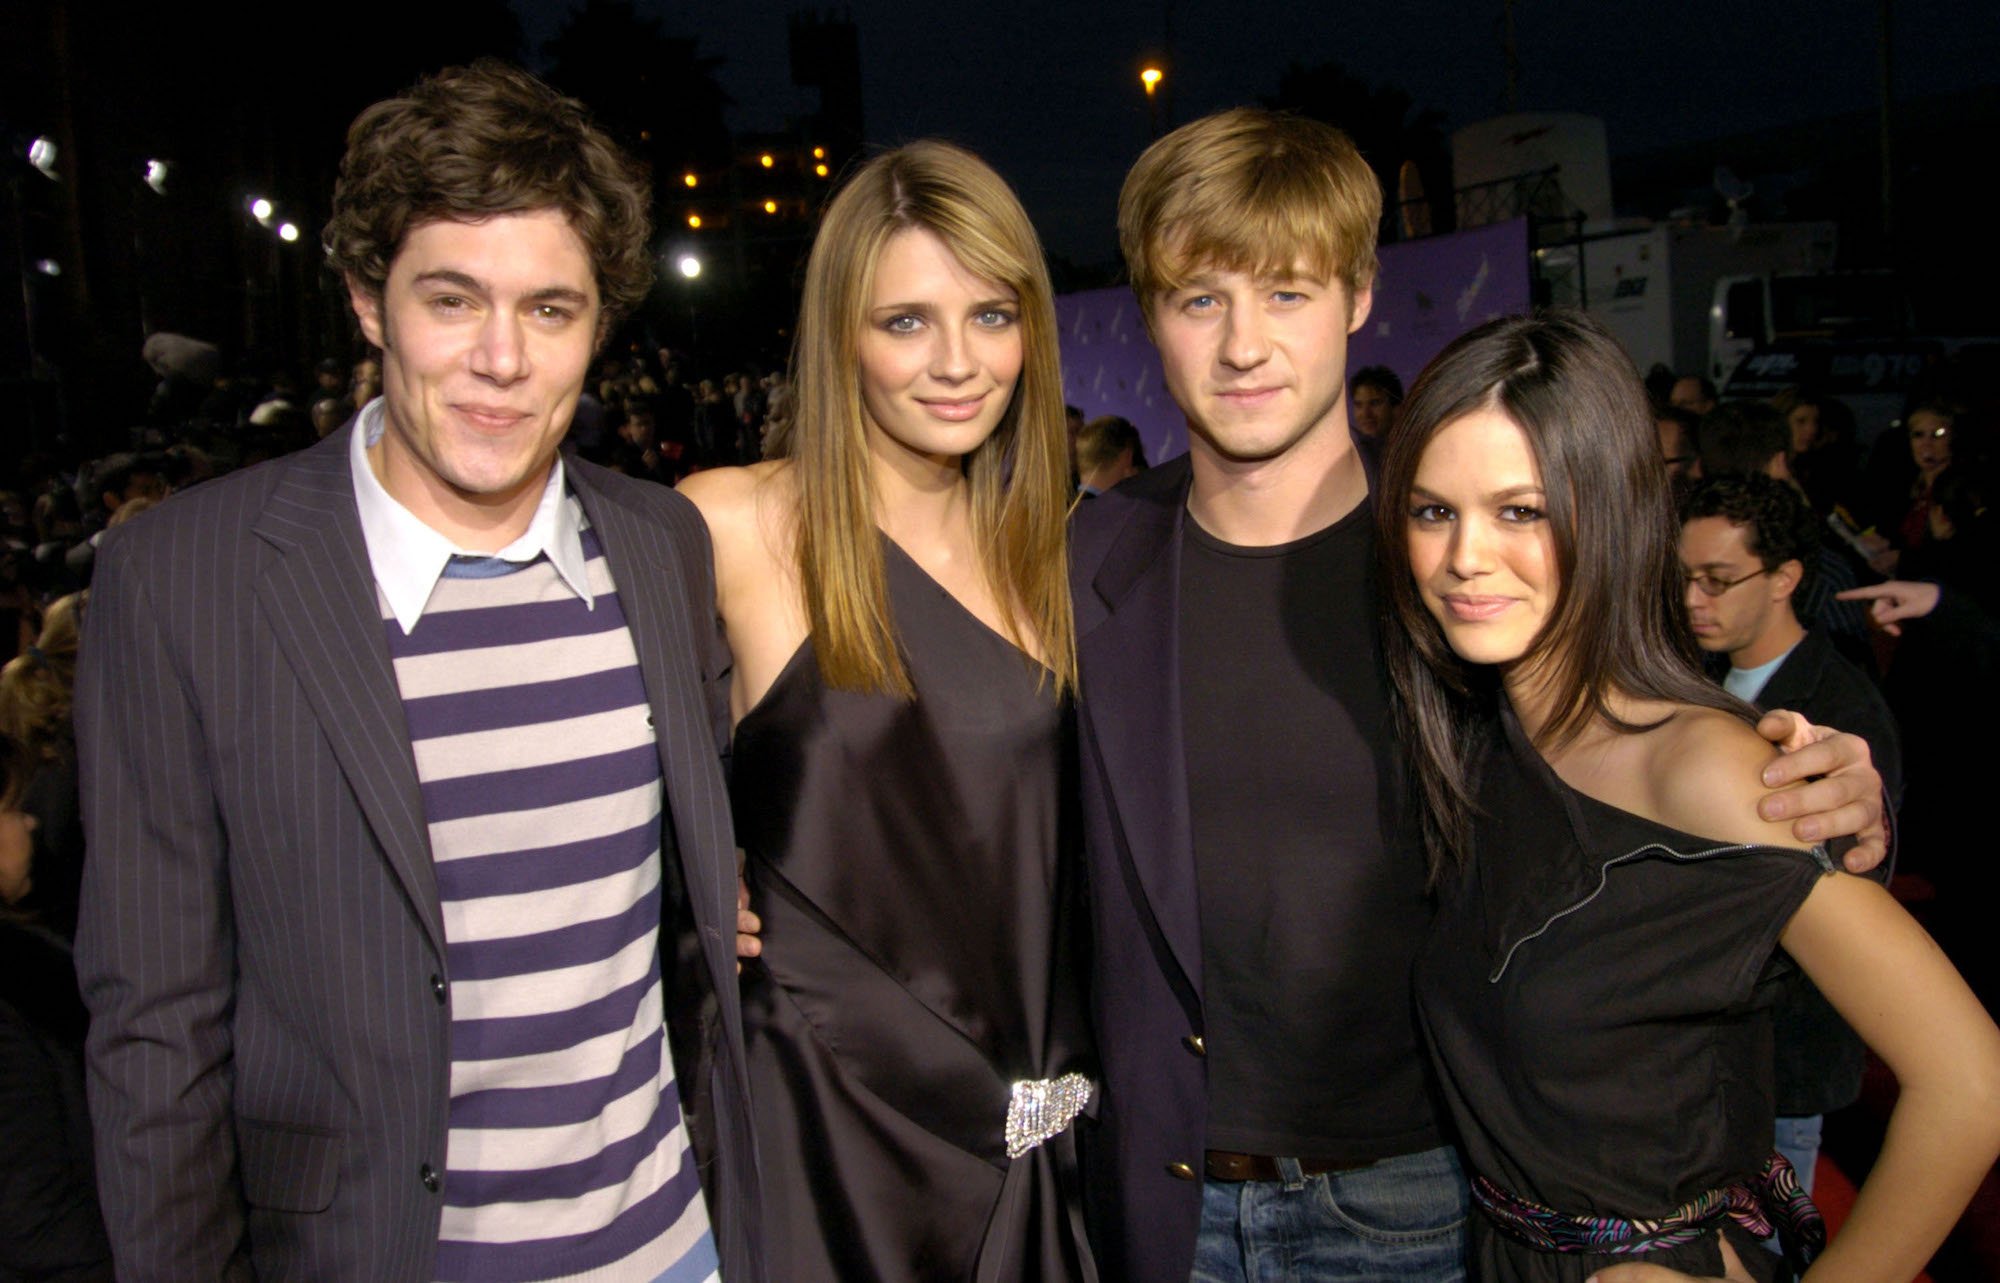 'The OC' stars Adam Brody, Mischa Barton, Benjamin McKenzie, and Rachel Bilson at the 2003 Billboard Music Awards.